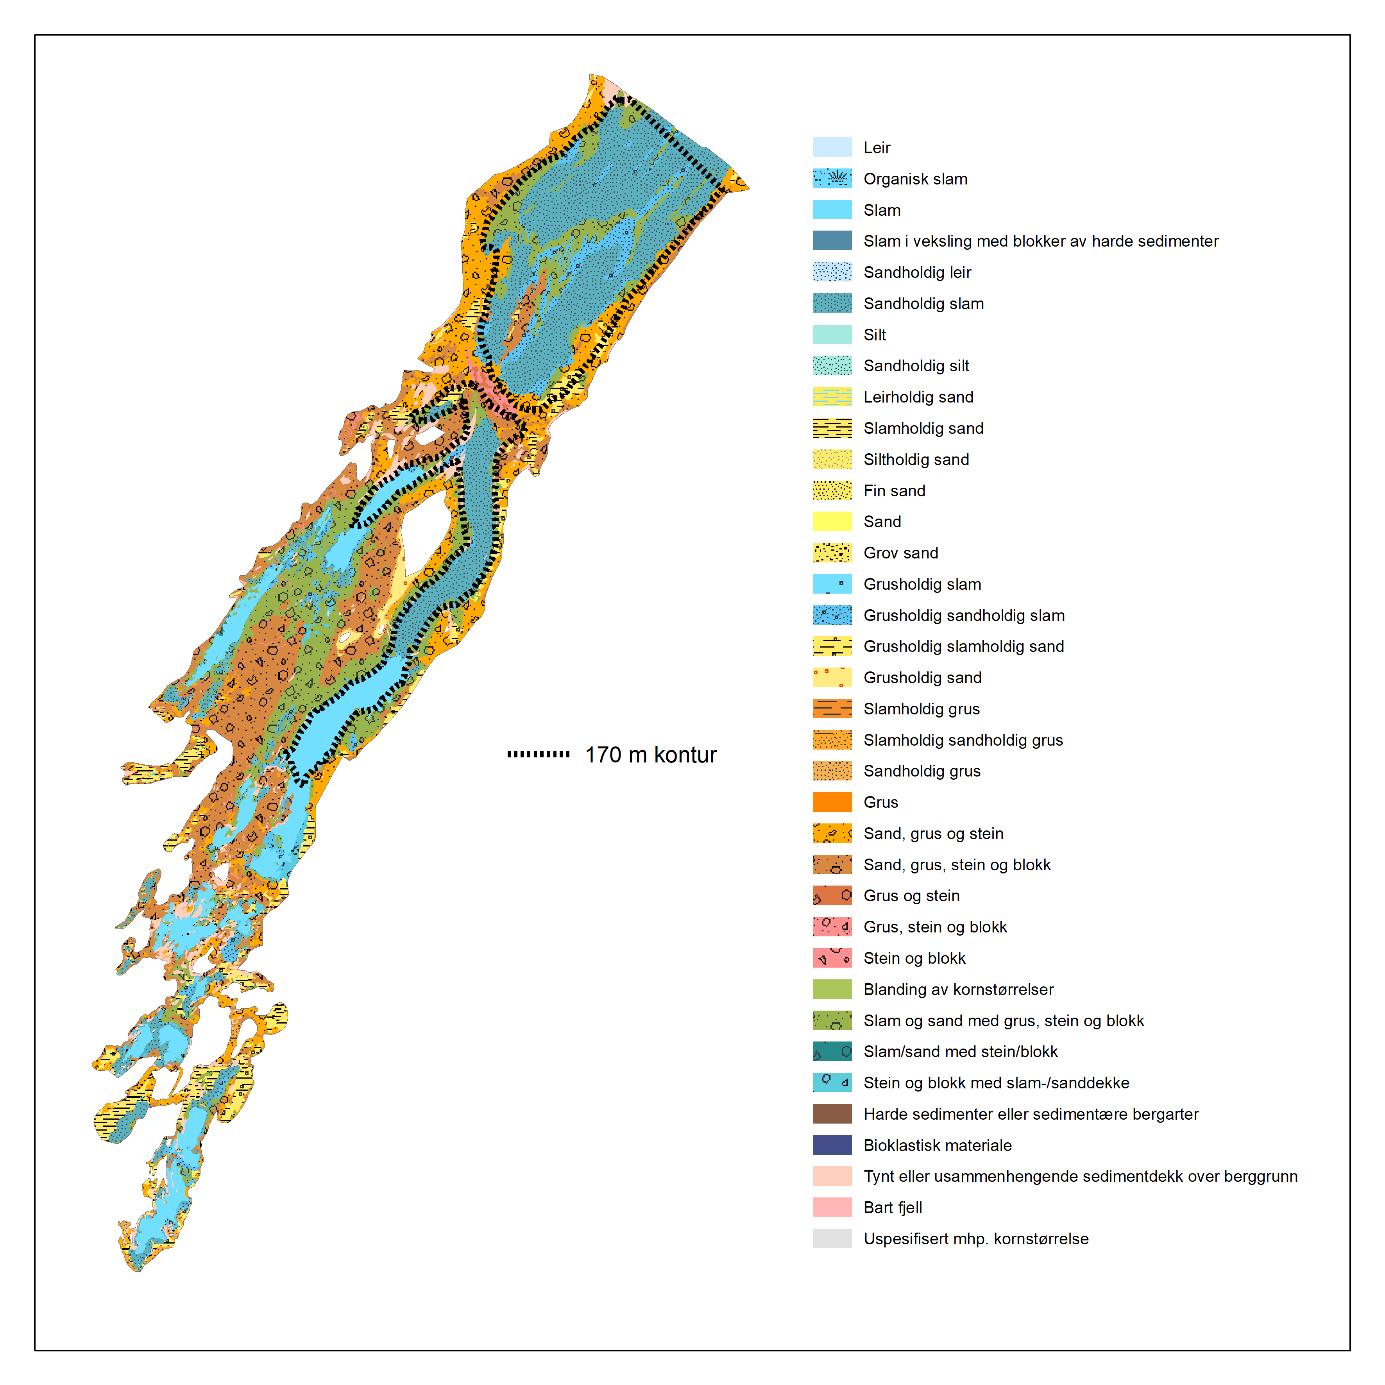 Figuren viser kart over Porsangerfjorden der 36 ulike farge- og mønsterkombinasjoner representerer de ulike bunntypene. En stiplet linje viser en 170 meters kontur. De dypere delene av fjorden består av blandinger av mer bløtere sedimenter som sand, silt, leire og slam. De grunnere områdene består mer av blandinger av hardere sedimenter som sand, grus, stein og blokk